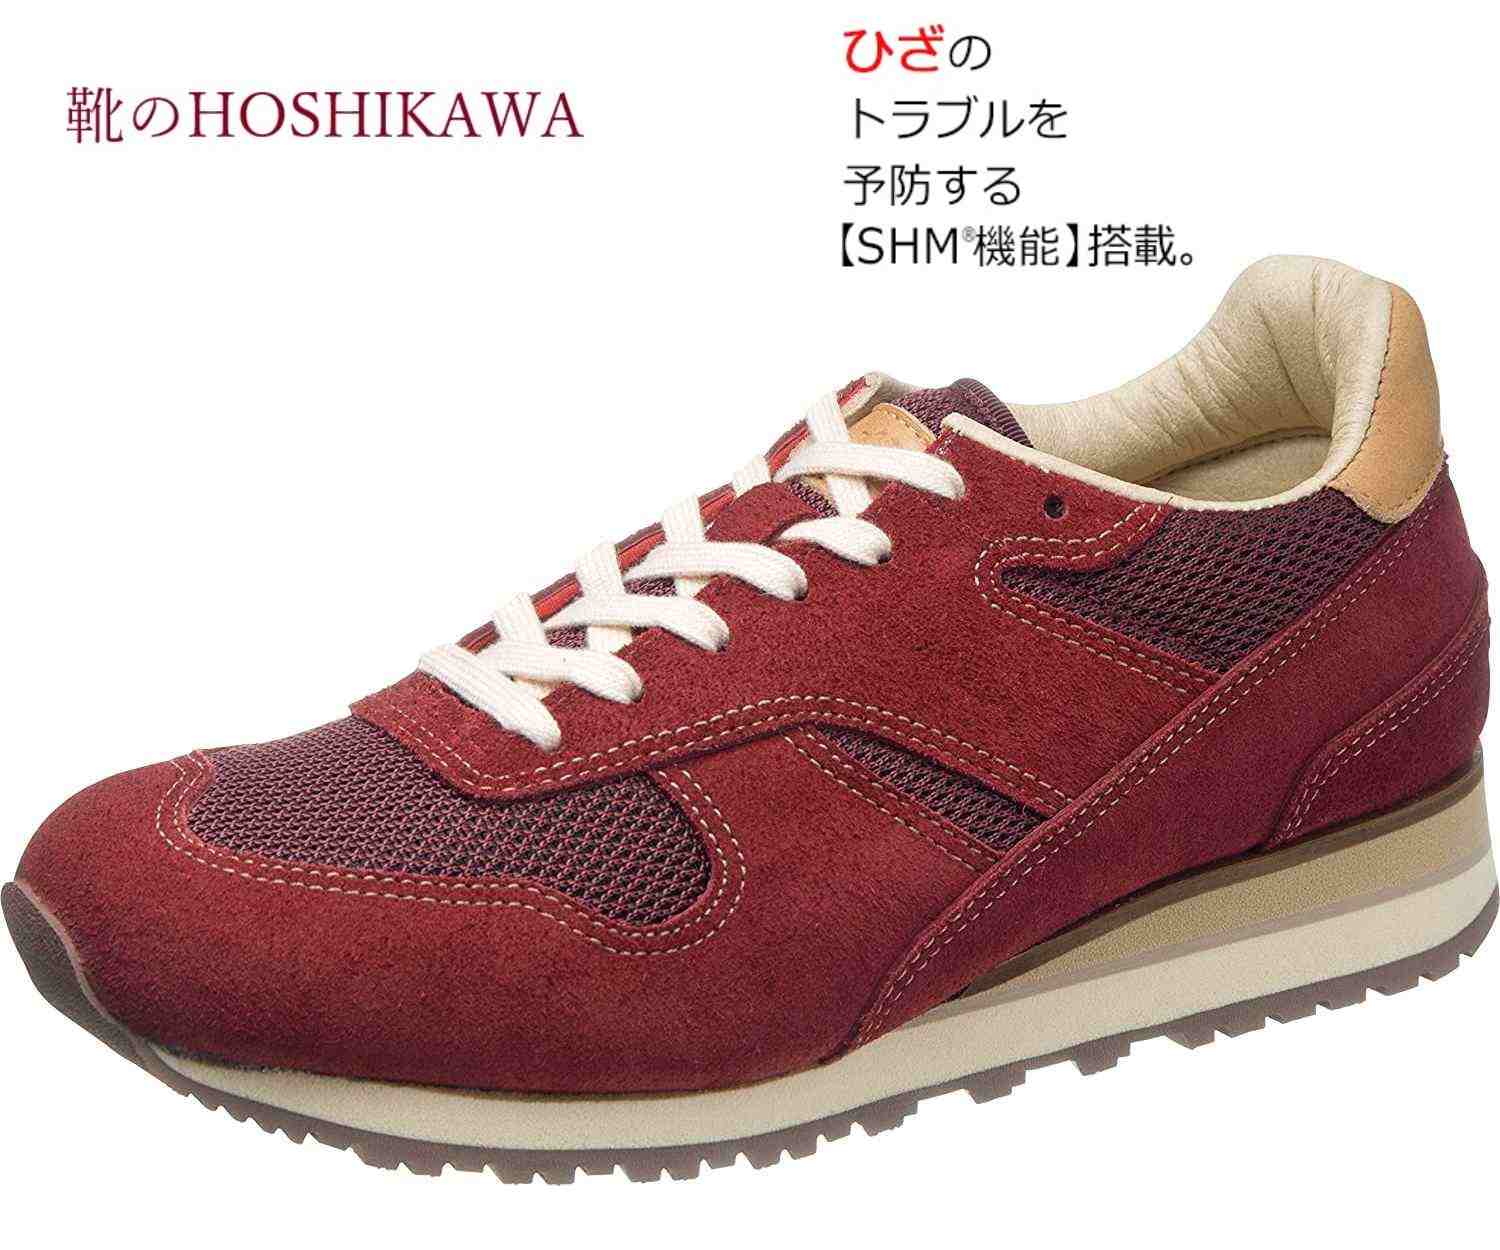 【靴のHOSHIKAWA】 『Medical Walk RW L011』アサヒ メディカルウォーク22cm〜25cm EEEレディース ワインカジュアルシューズ レースアップ天然皮革 SHM